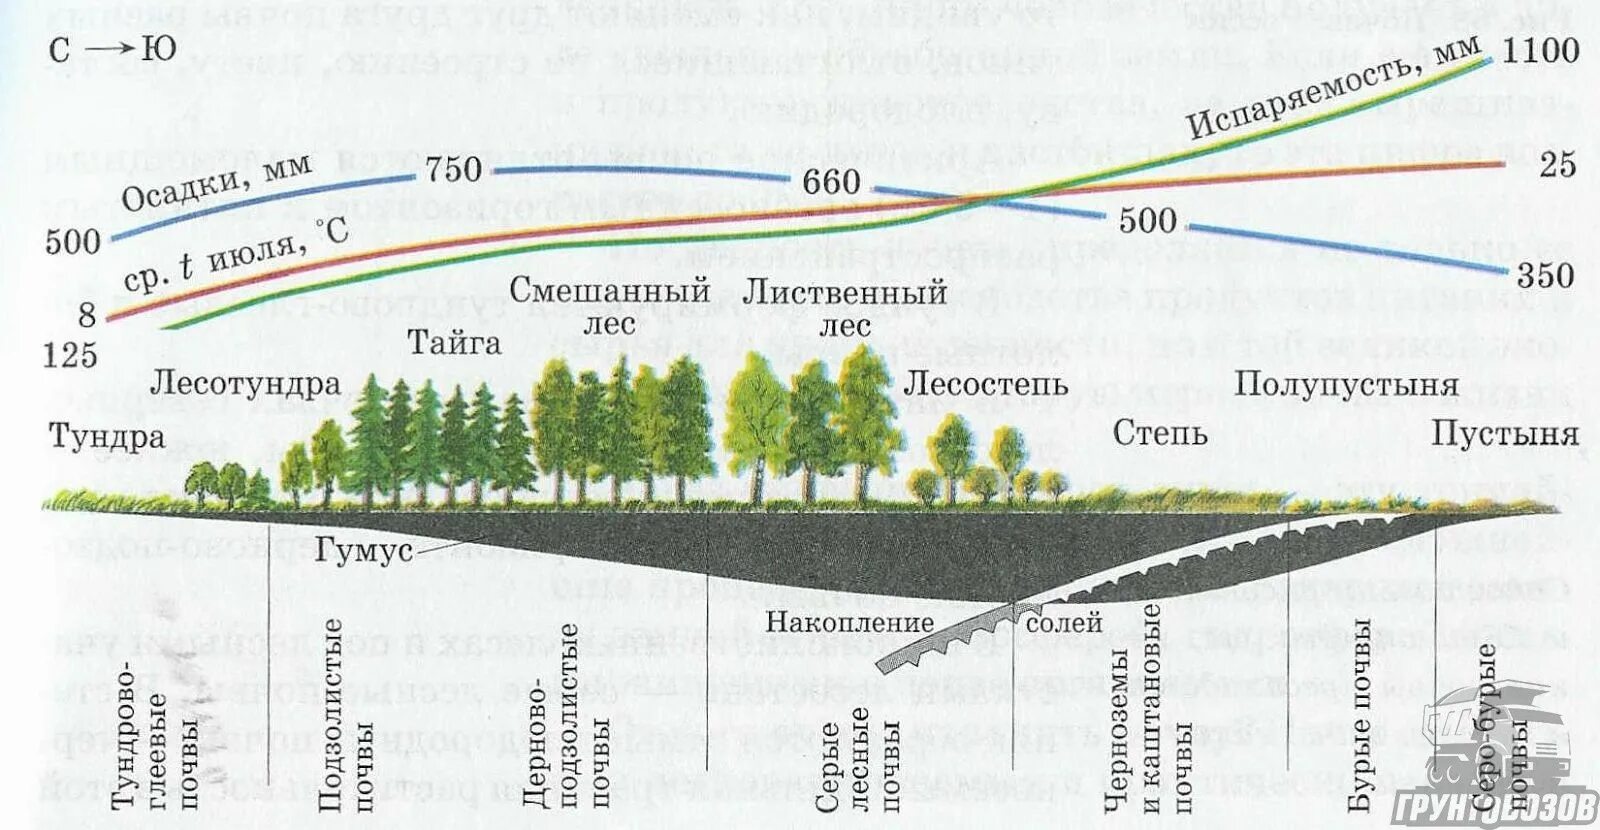 Какова причина зональности. Взаимосвязь почв растительности и климата. Распространение типов почв. Взаимосвязь типов почв с климатом и растительностью рисунок. Взаимосвязь типов почв с климатом.